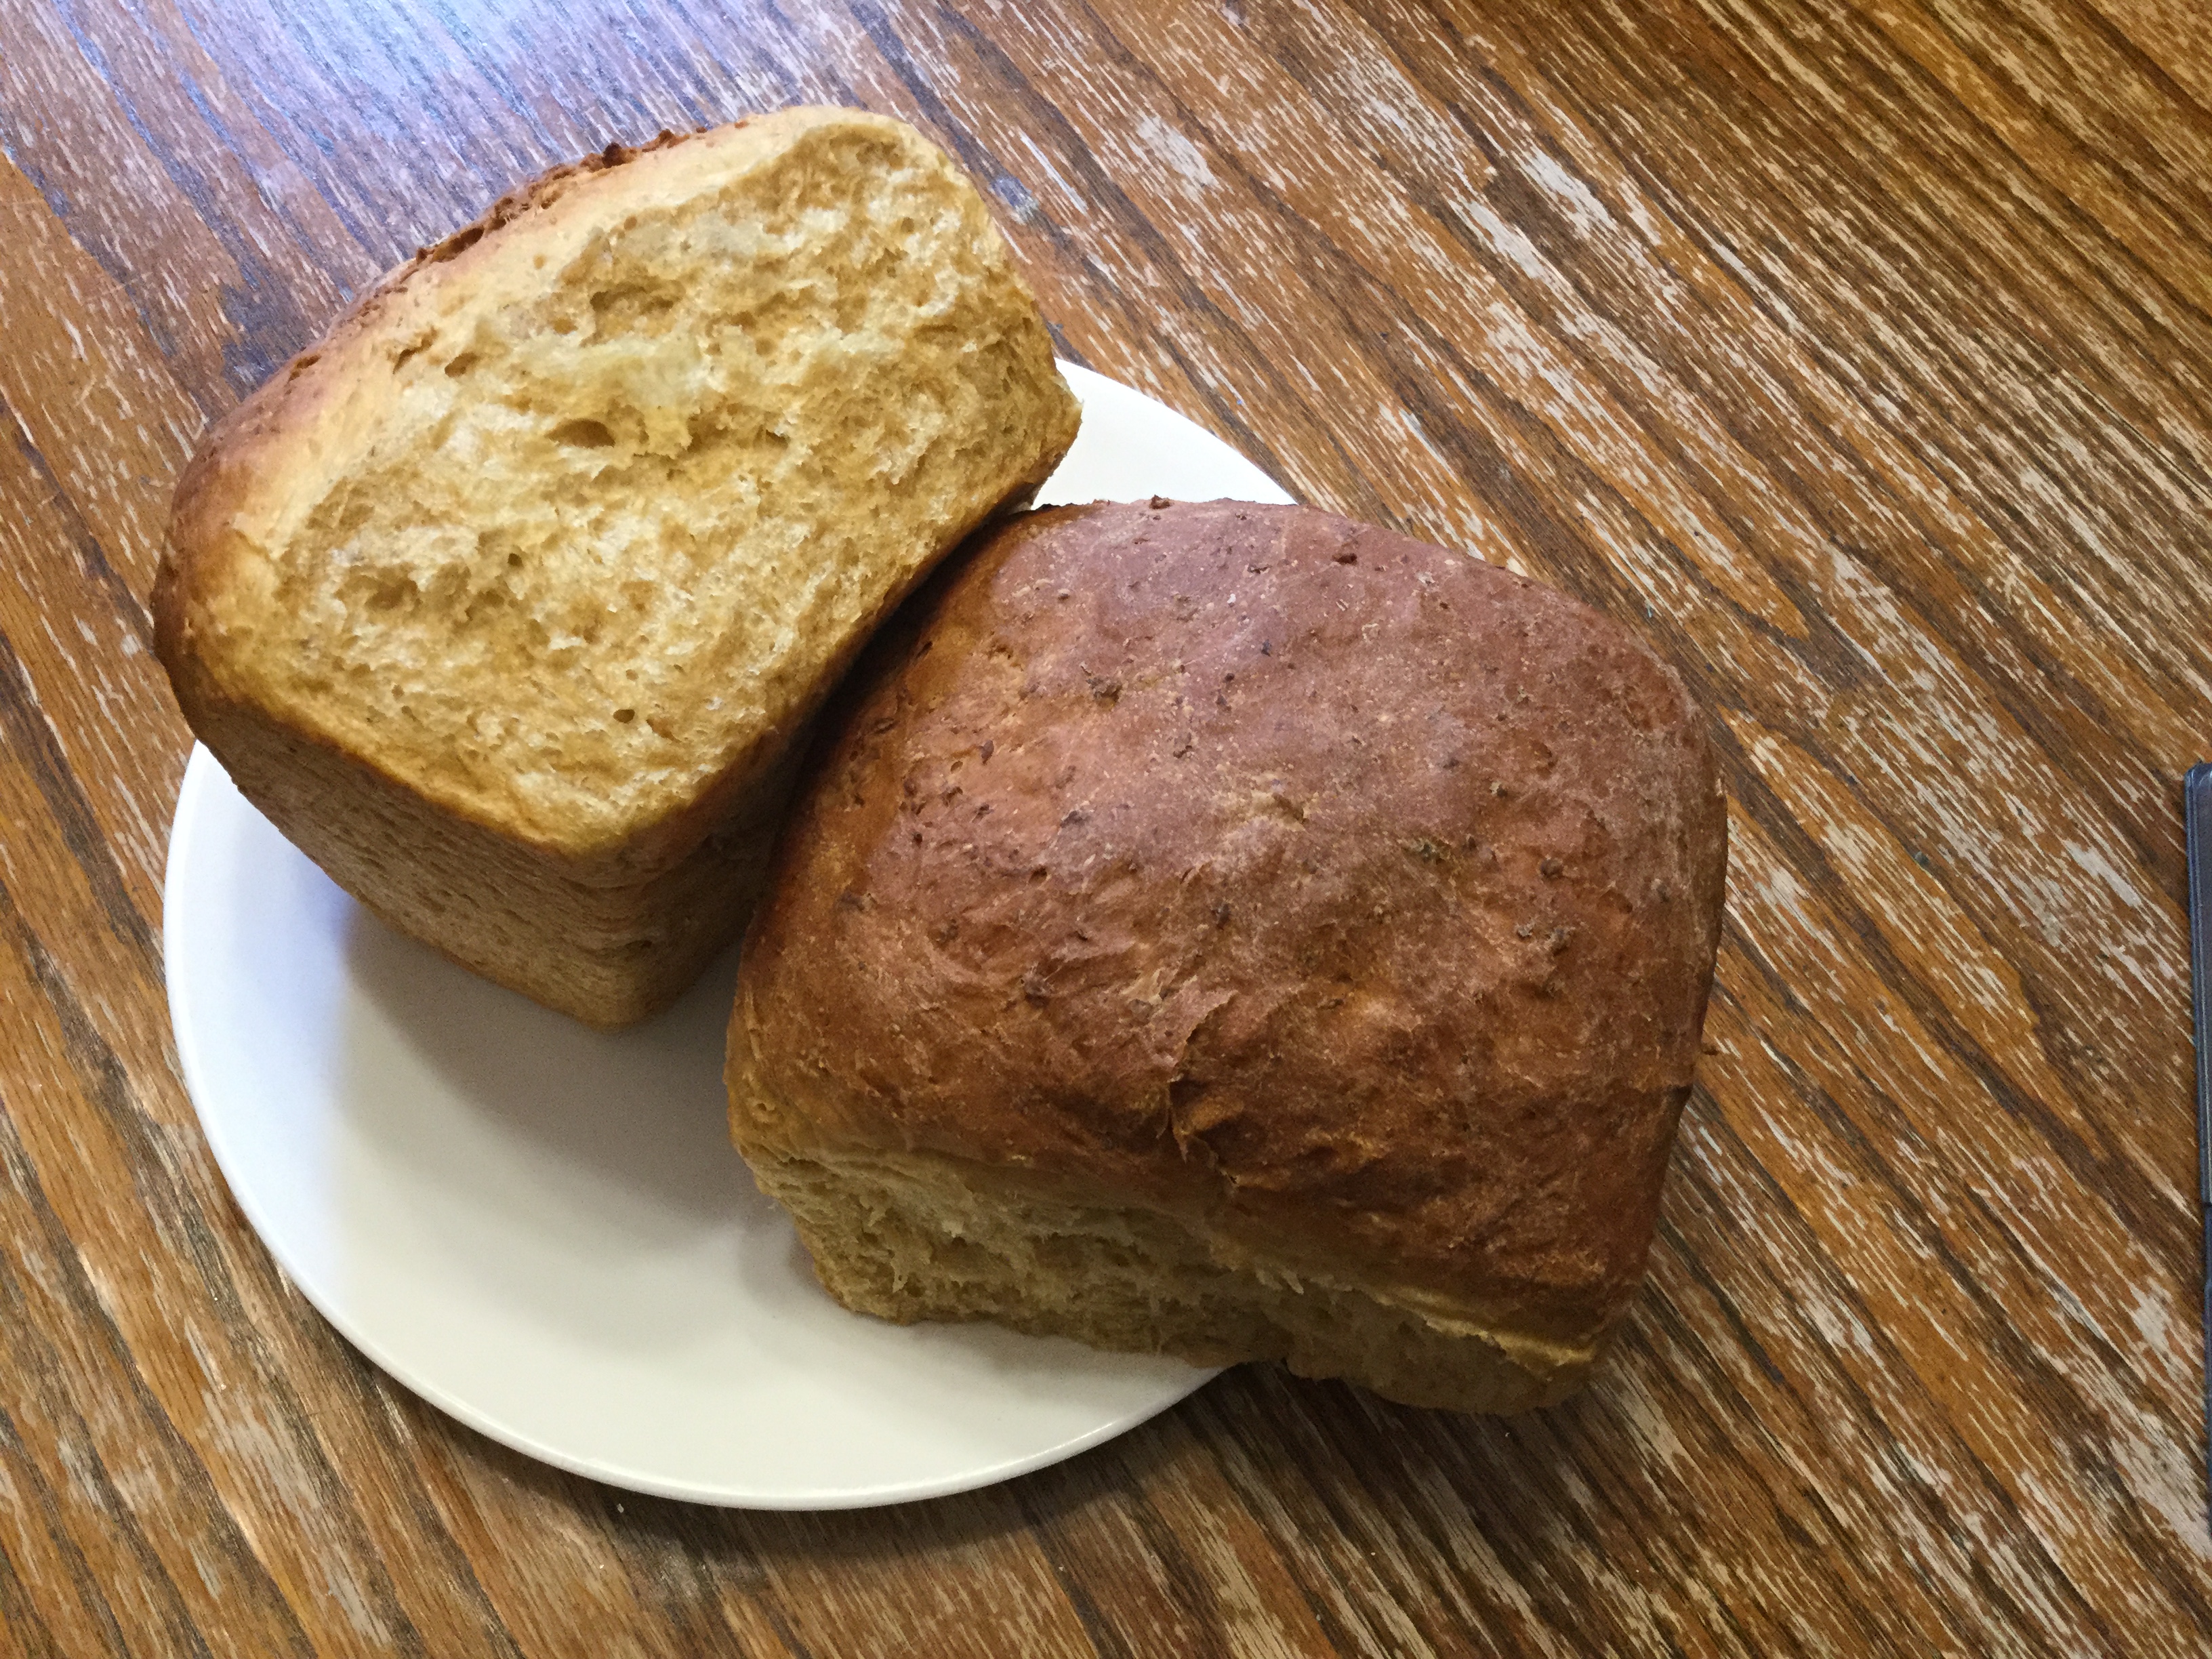 Old-Fashioned Porridge and Molasses Bread